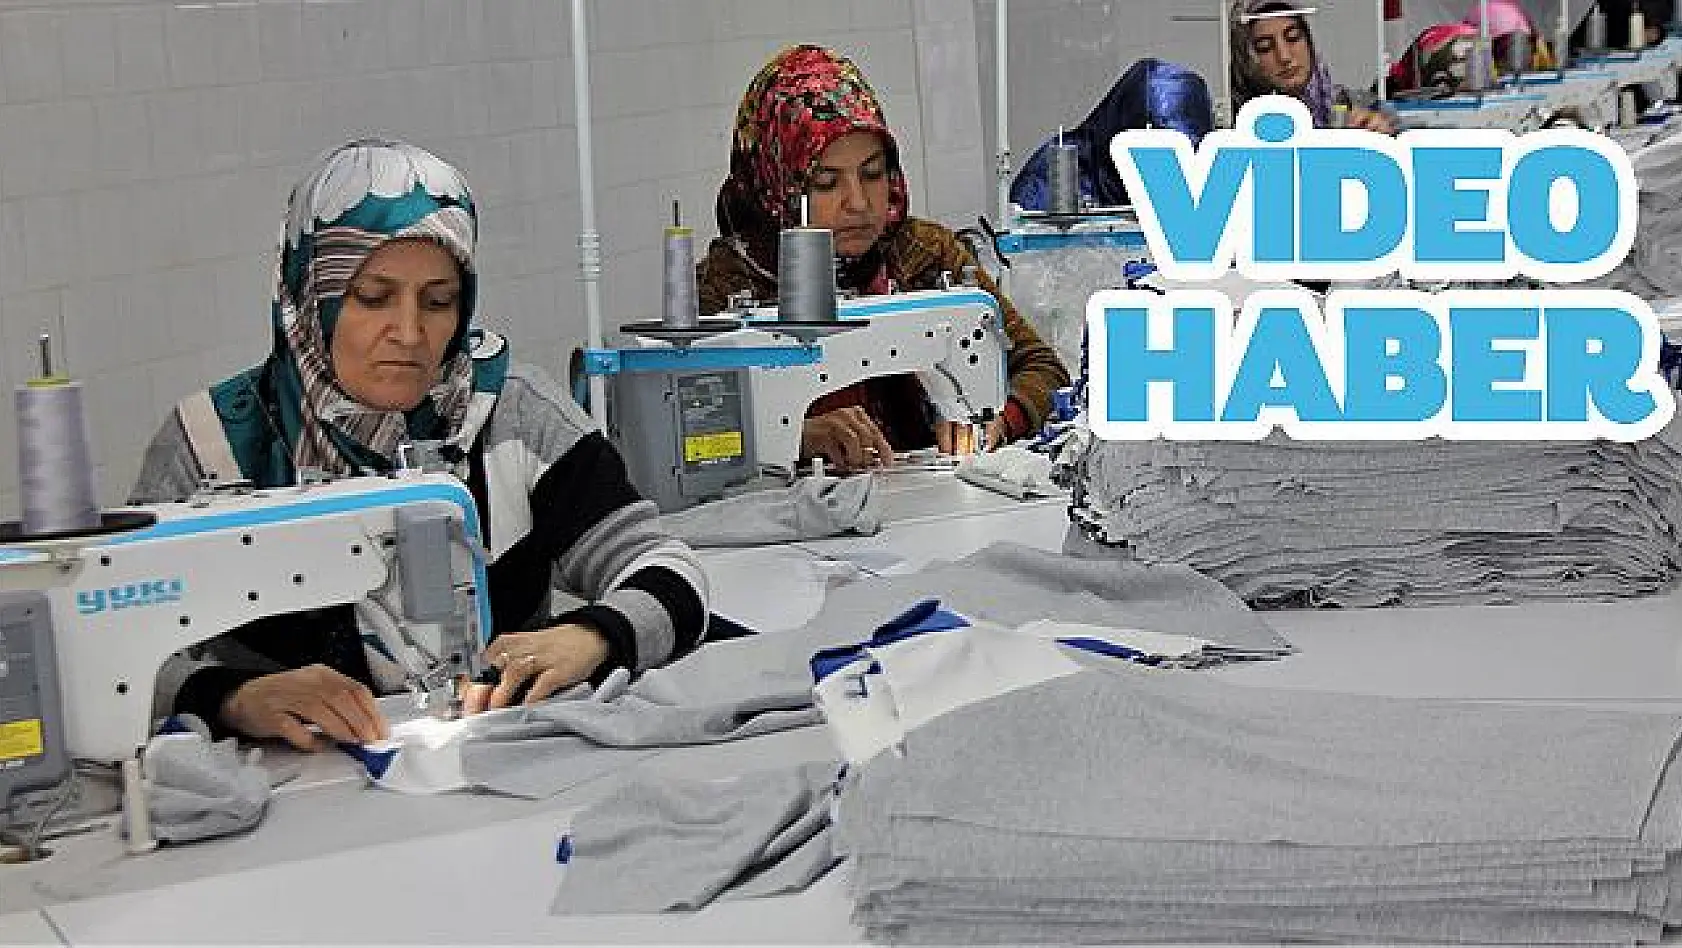 İlçenin kadınları tekstil atölyesi ile ihracata kapı araladı (VİDEO)